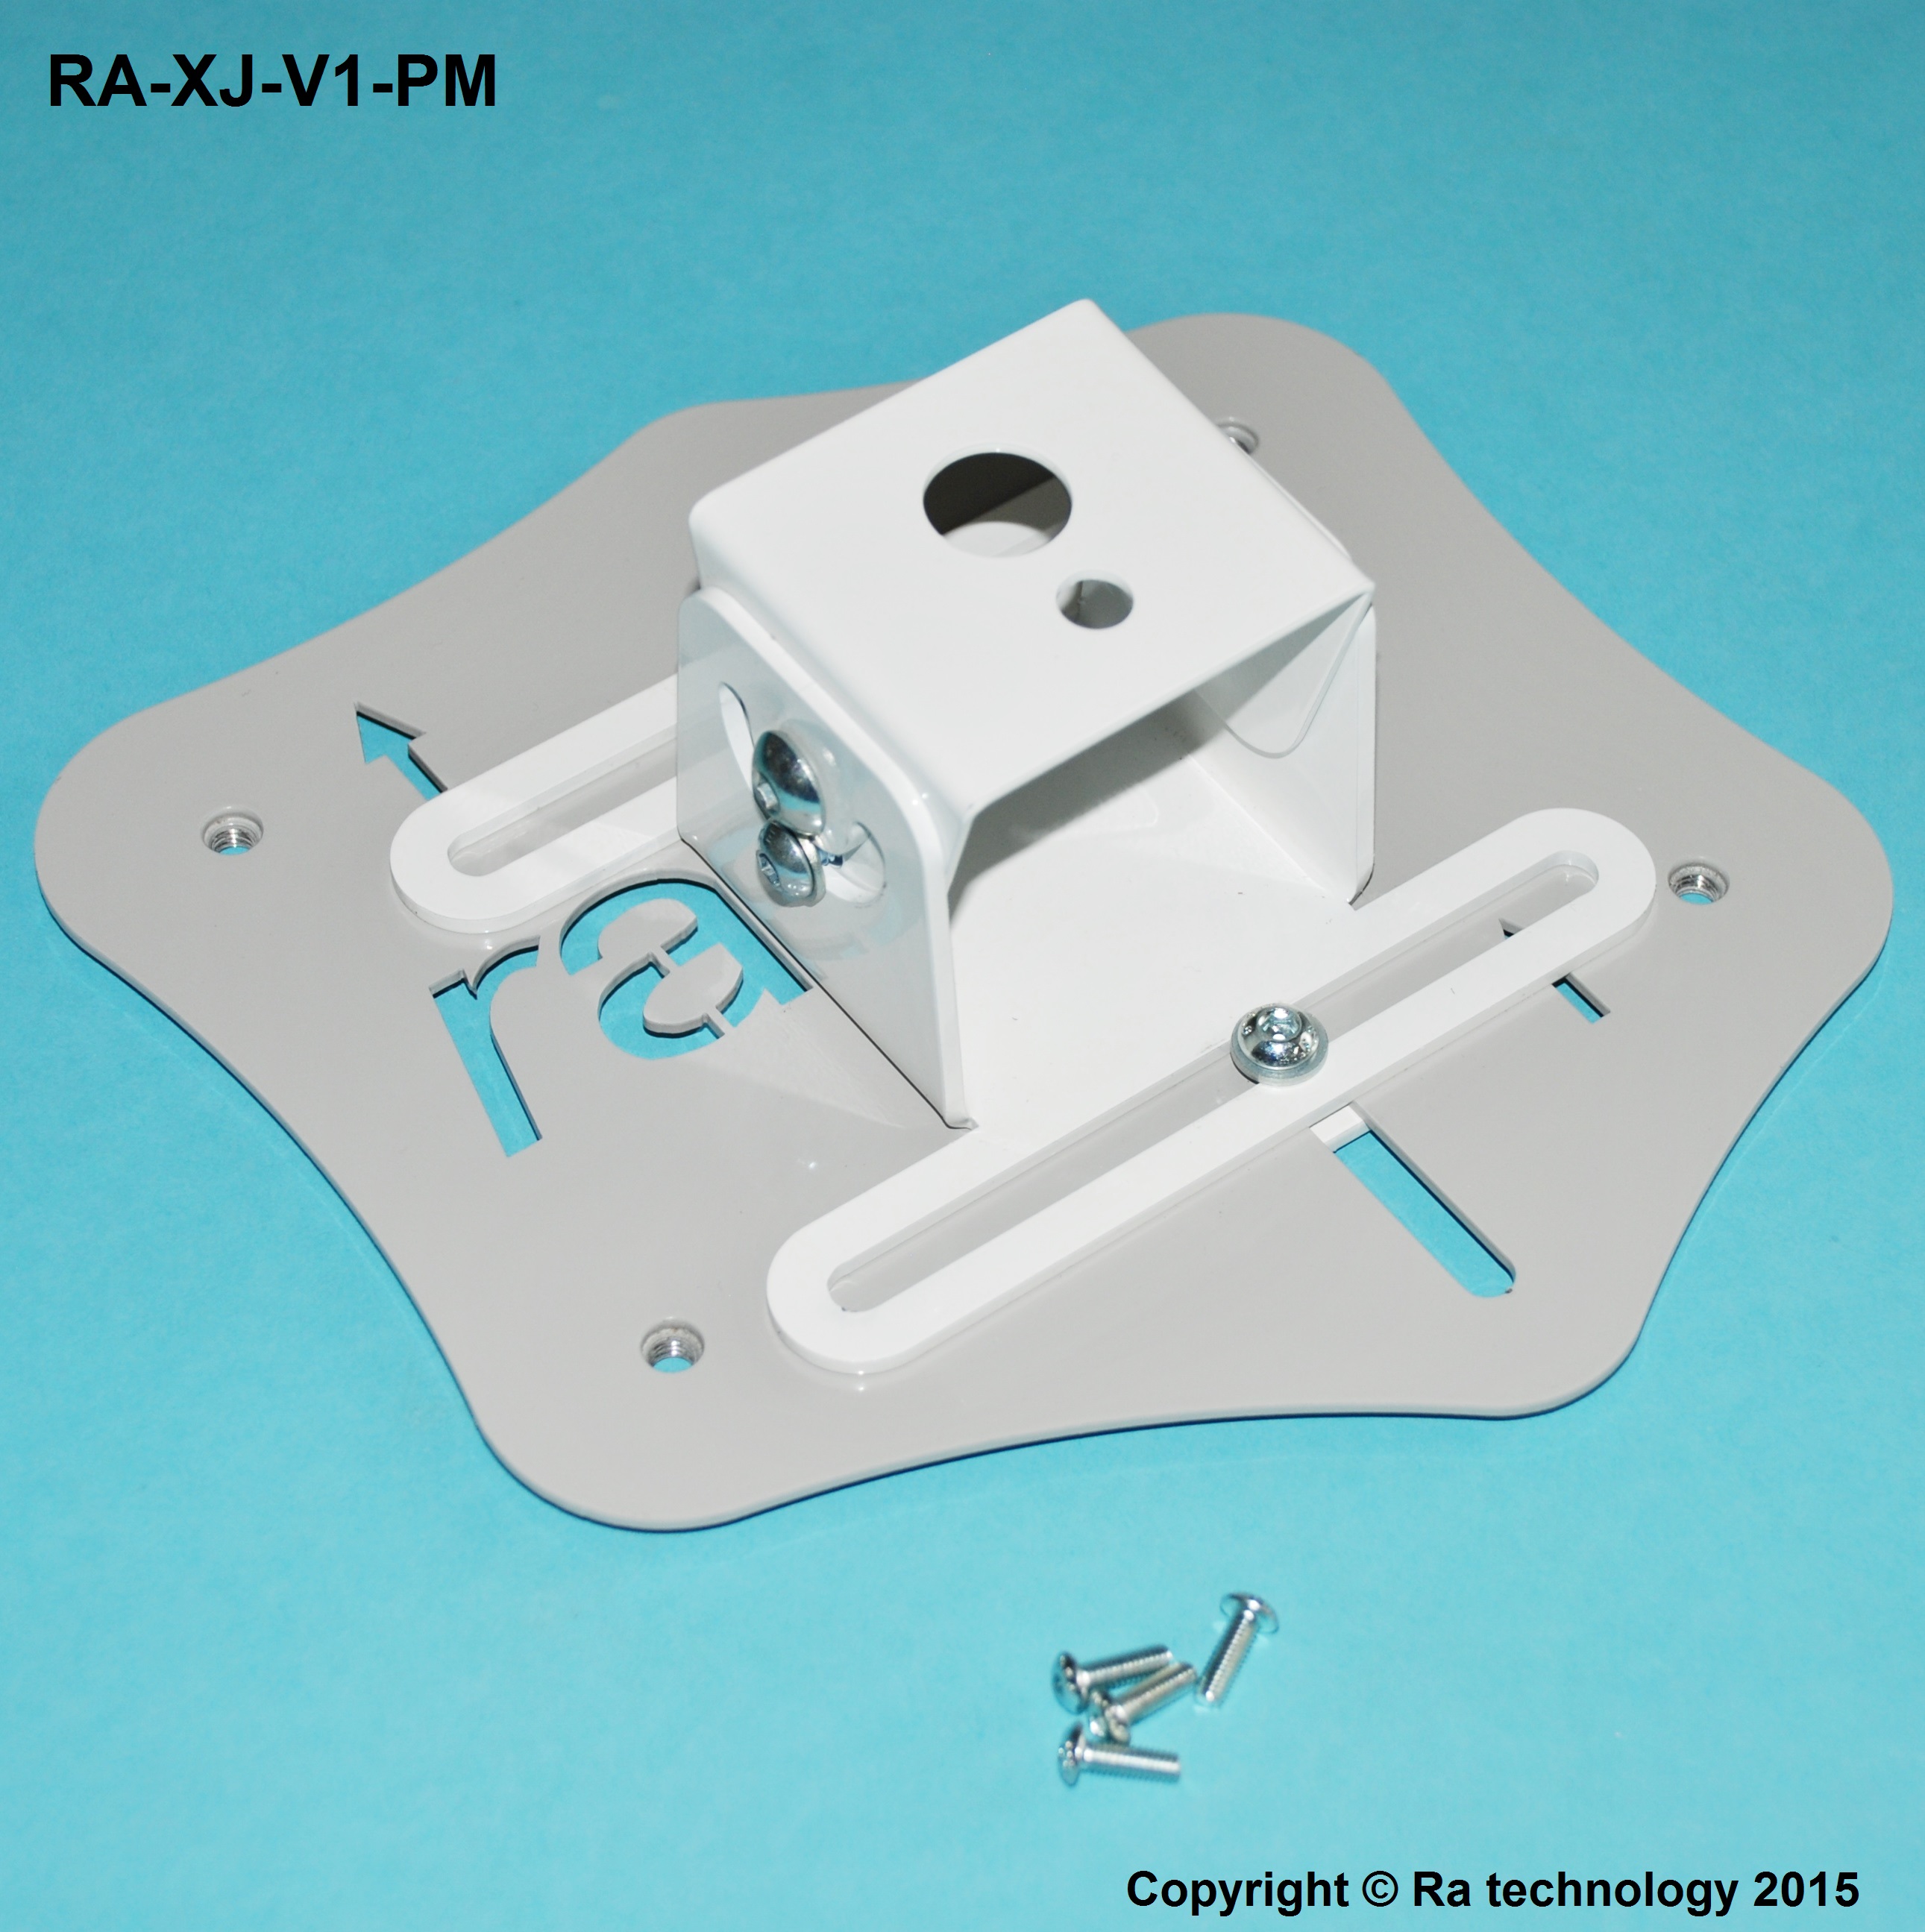 RA Casio XJ-V & XJ-F Promethean Ceiling Pole Adaptor Mount